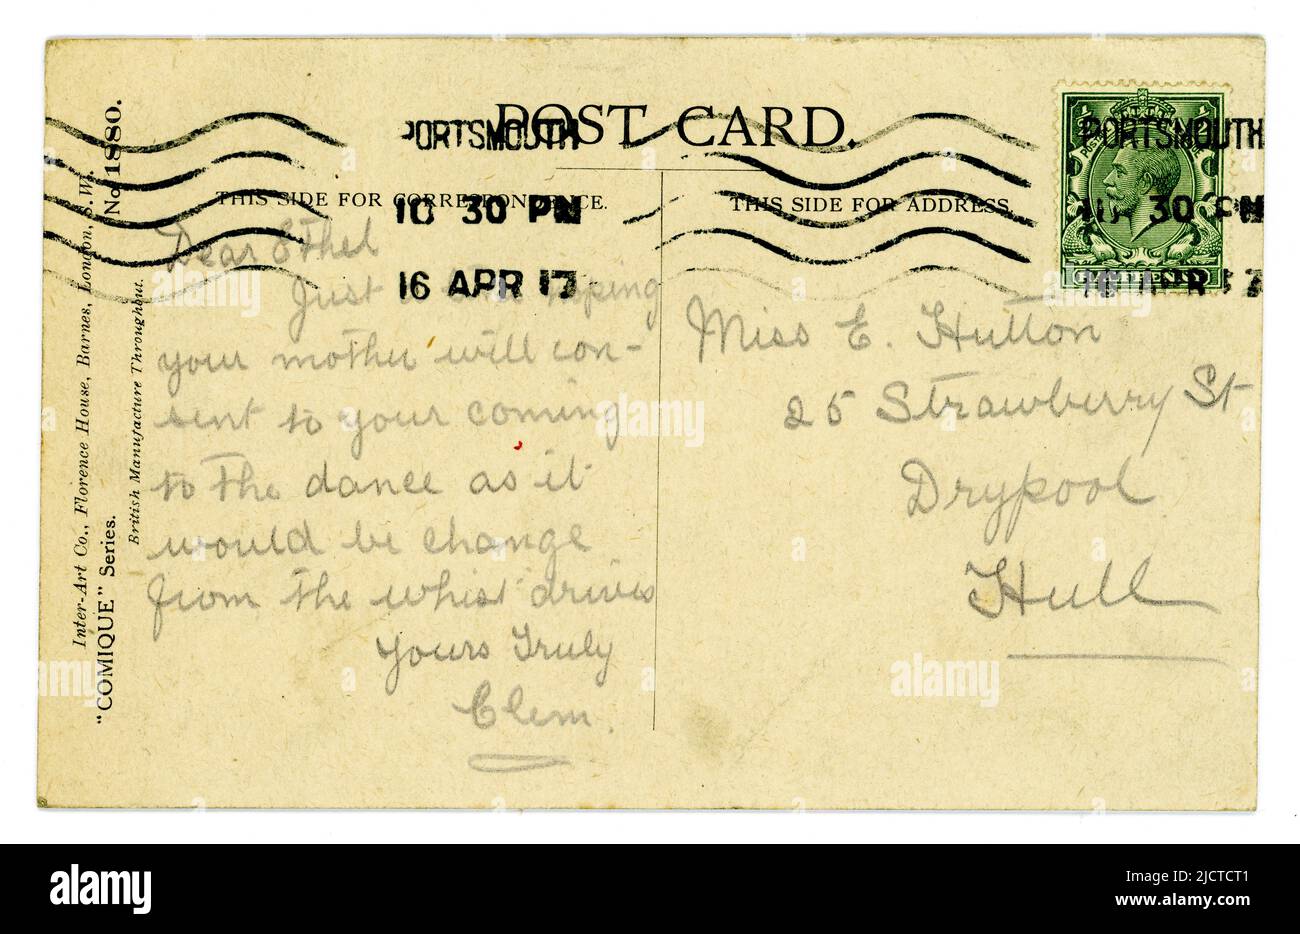 Originalstempel aus der WW1. Ära, Postkartenschrift, grün, King George V 1/2 d (halber Pence/Penny), geächtet.- datiert/gepostet am 16. April 1917 Stockfoto